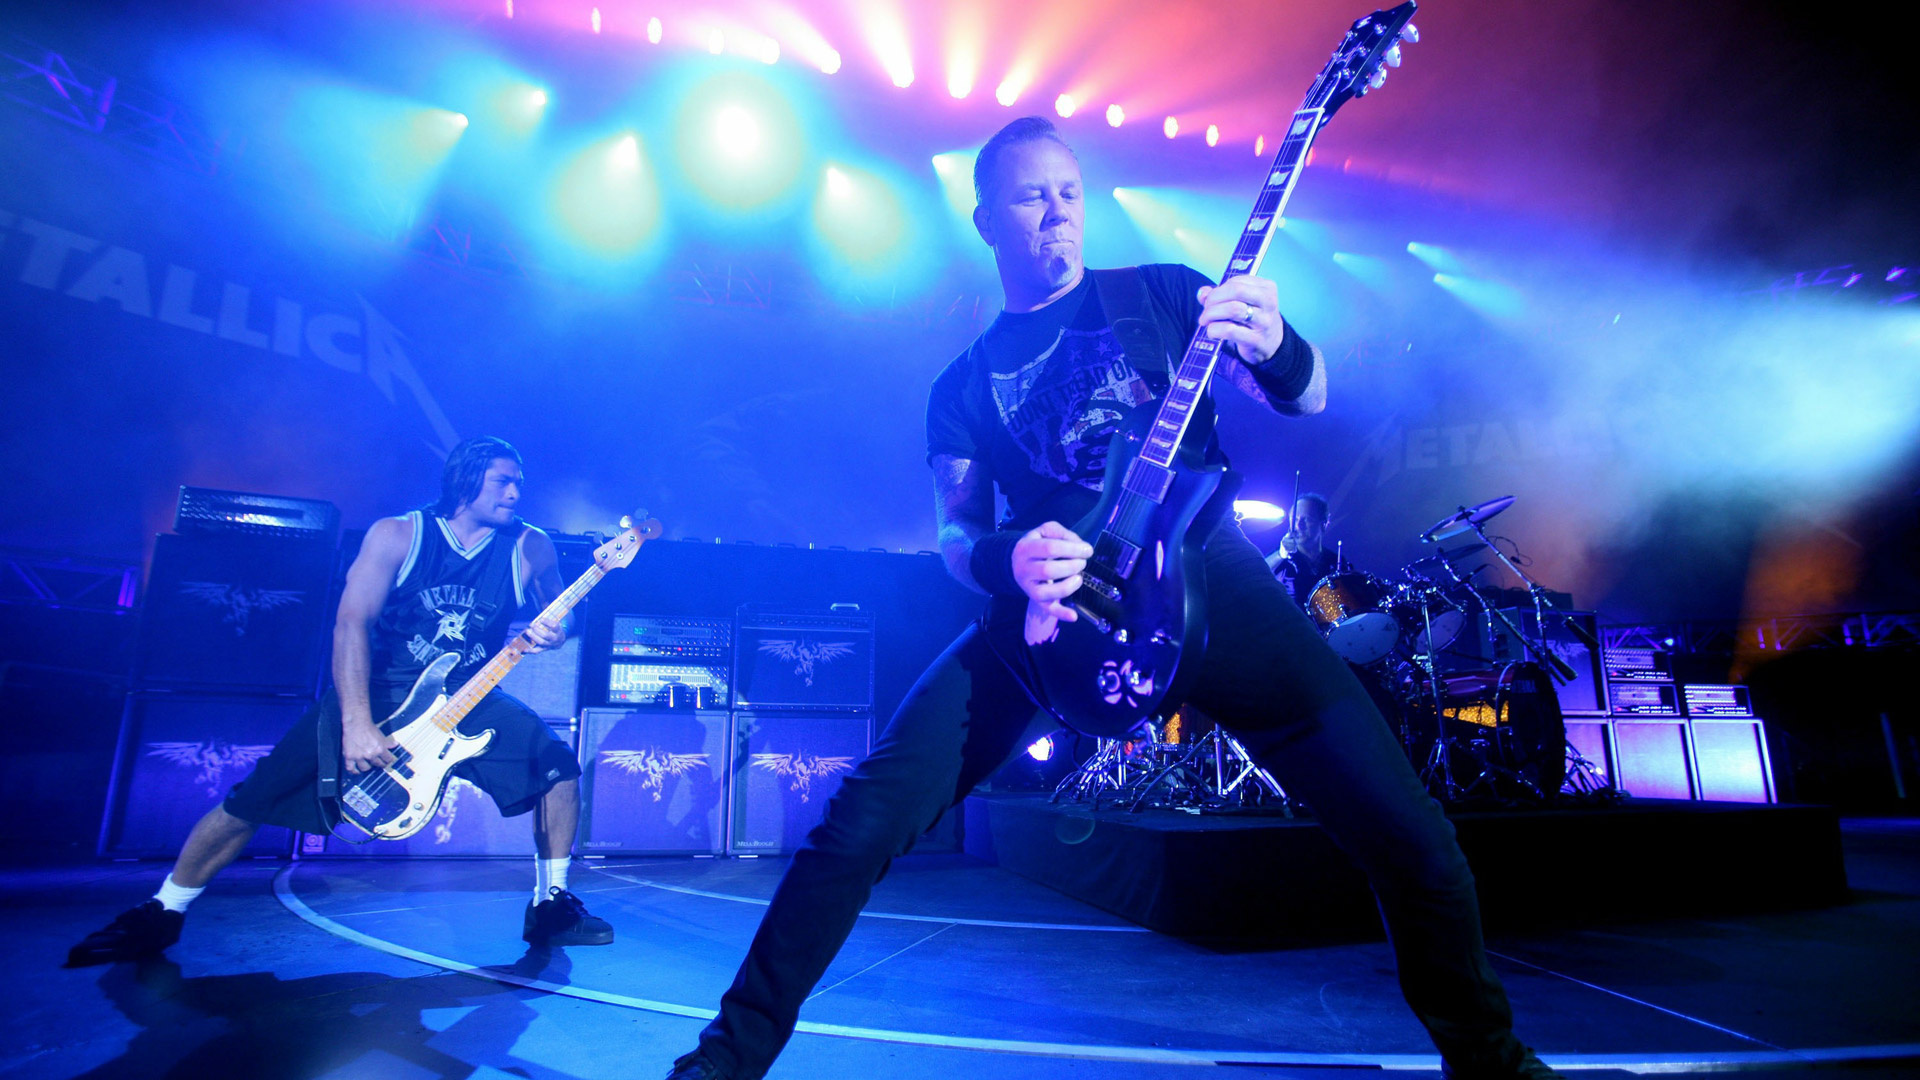 Metallica concert, Lighted guitar, Blue ambiance, James Hetfield's performance, 1920x1080 Full HD Desktop